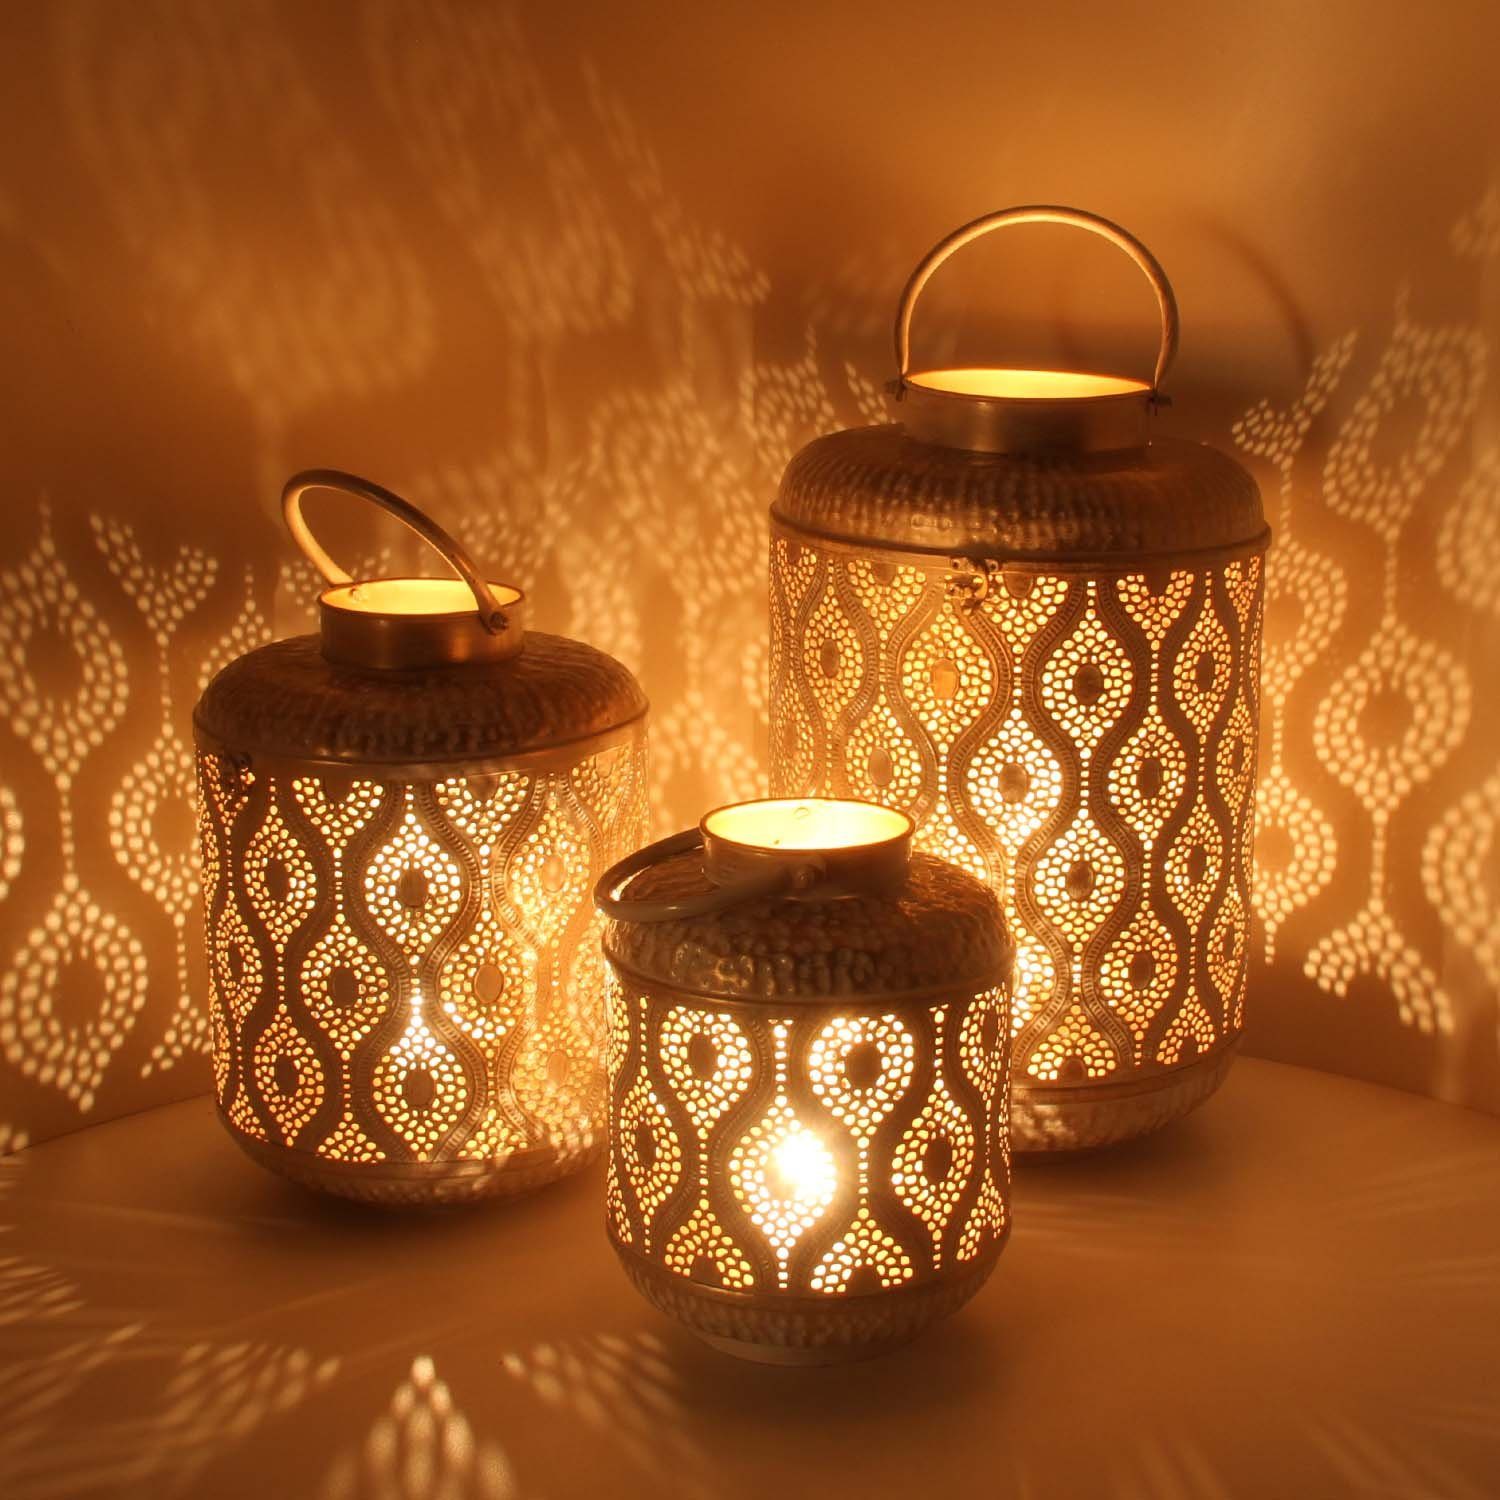 Casa Moro Kerzenlaterne Weihnachtslaterne Suraya 3er Set in Shabby Chic Weiß Gold aus Metall (Marokkanisches Windlicht stehend & hängend, 3er Set), Tischlaterne für Weihnachten Feier Dekoration Geschenk, IRL5010